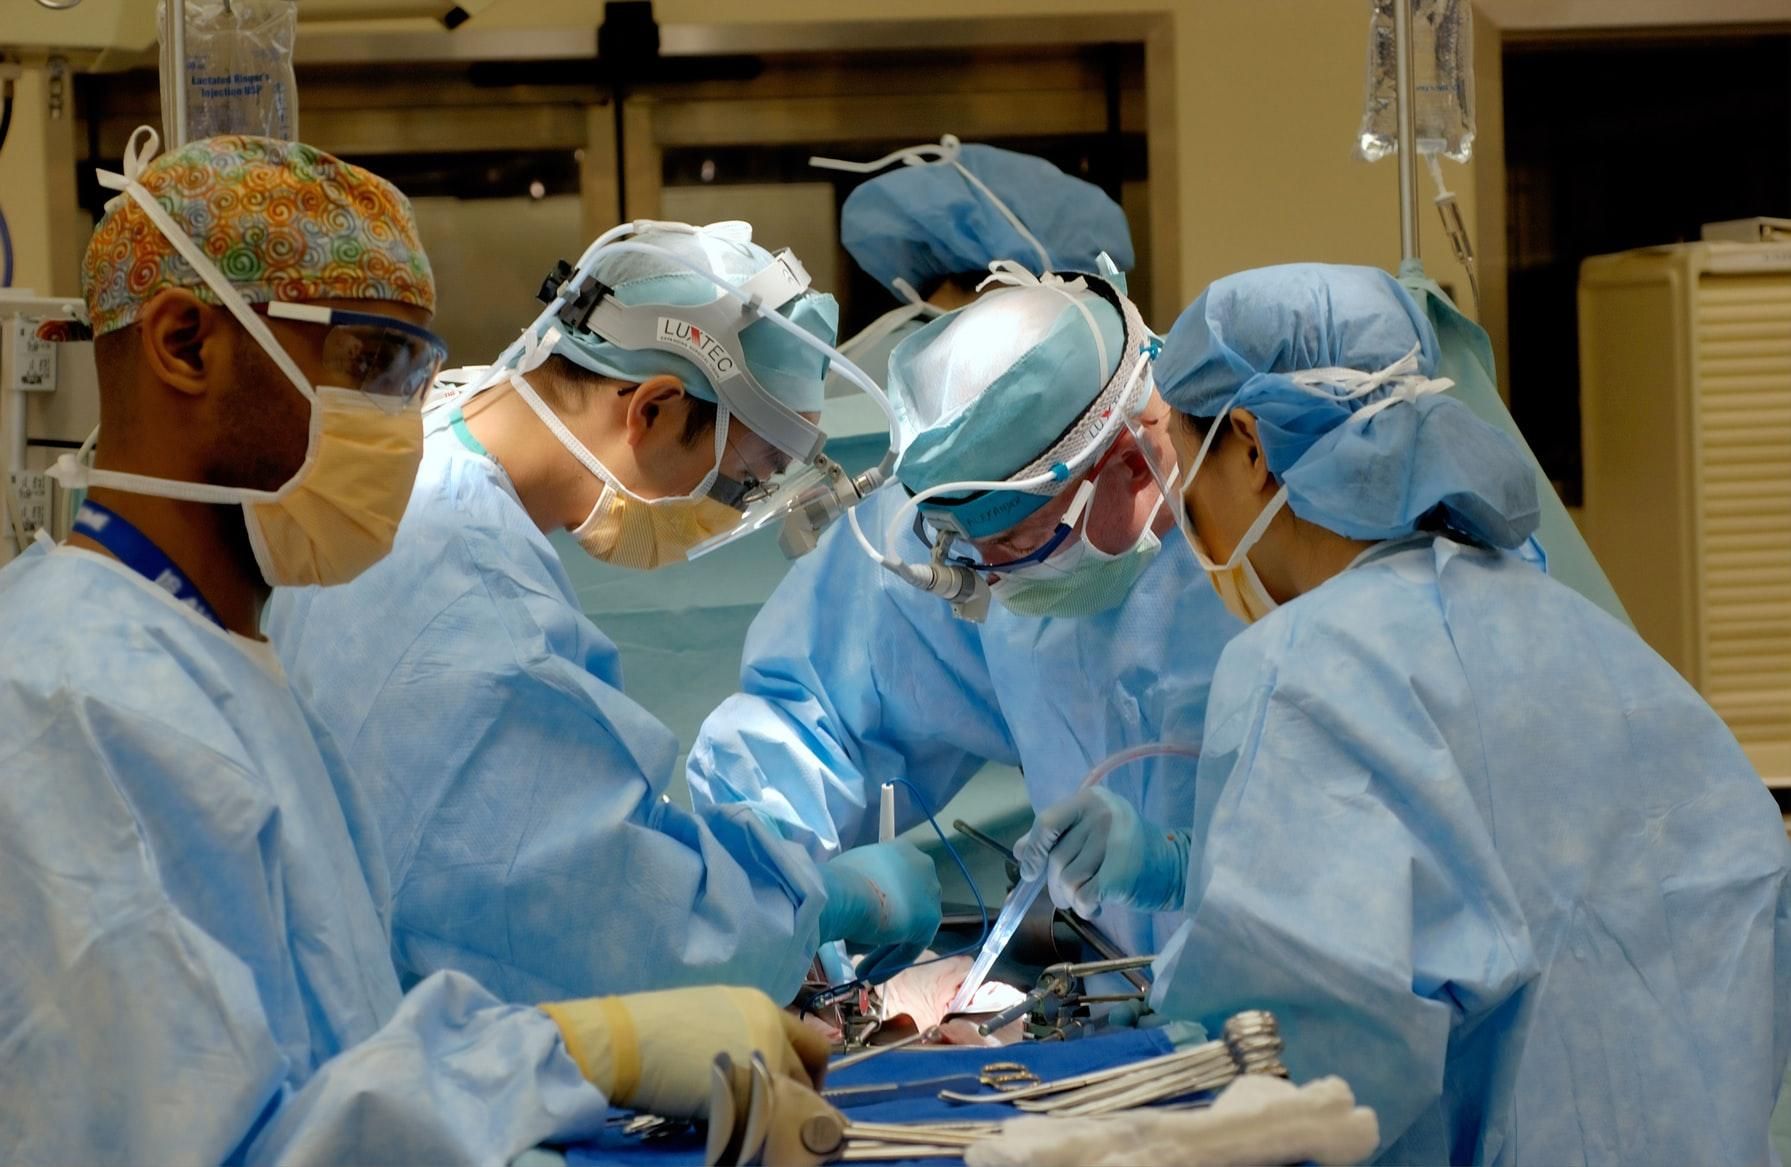 Хирург выжигал свои инициалы на печени пациентов во время трансплантации